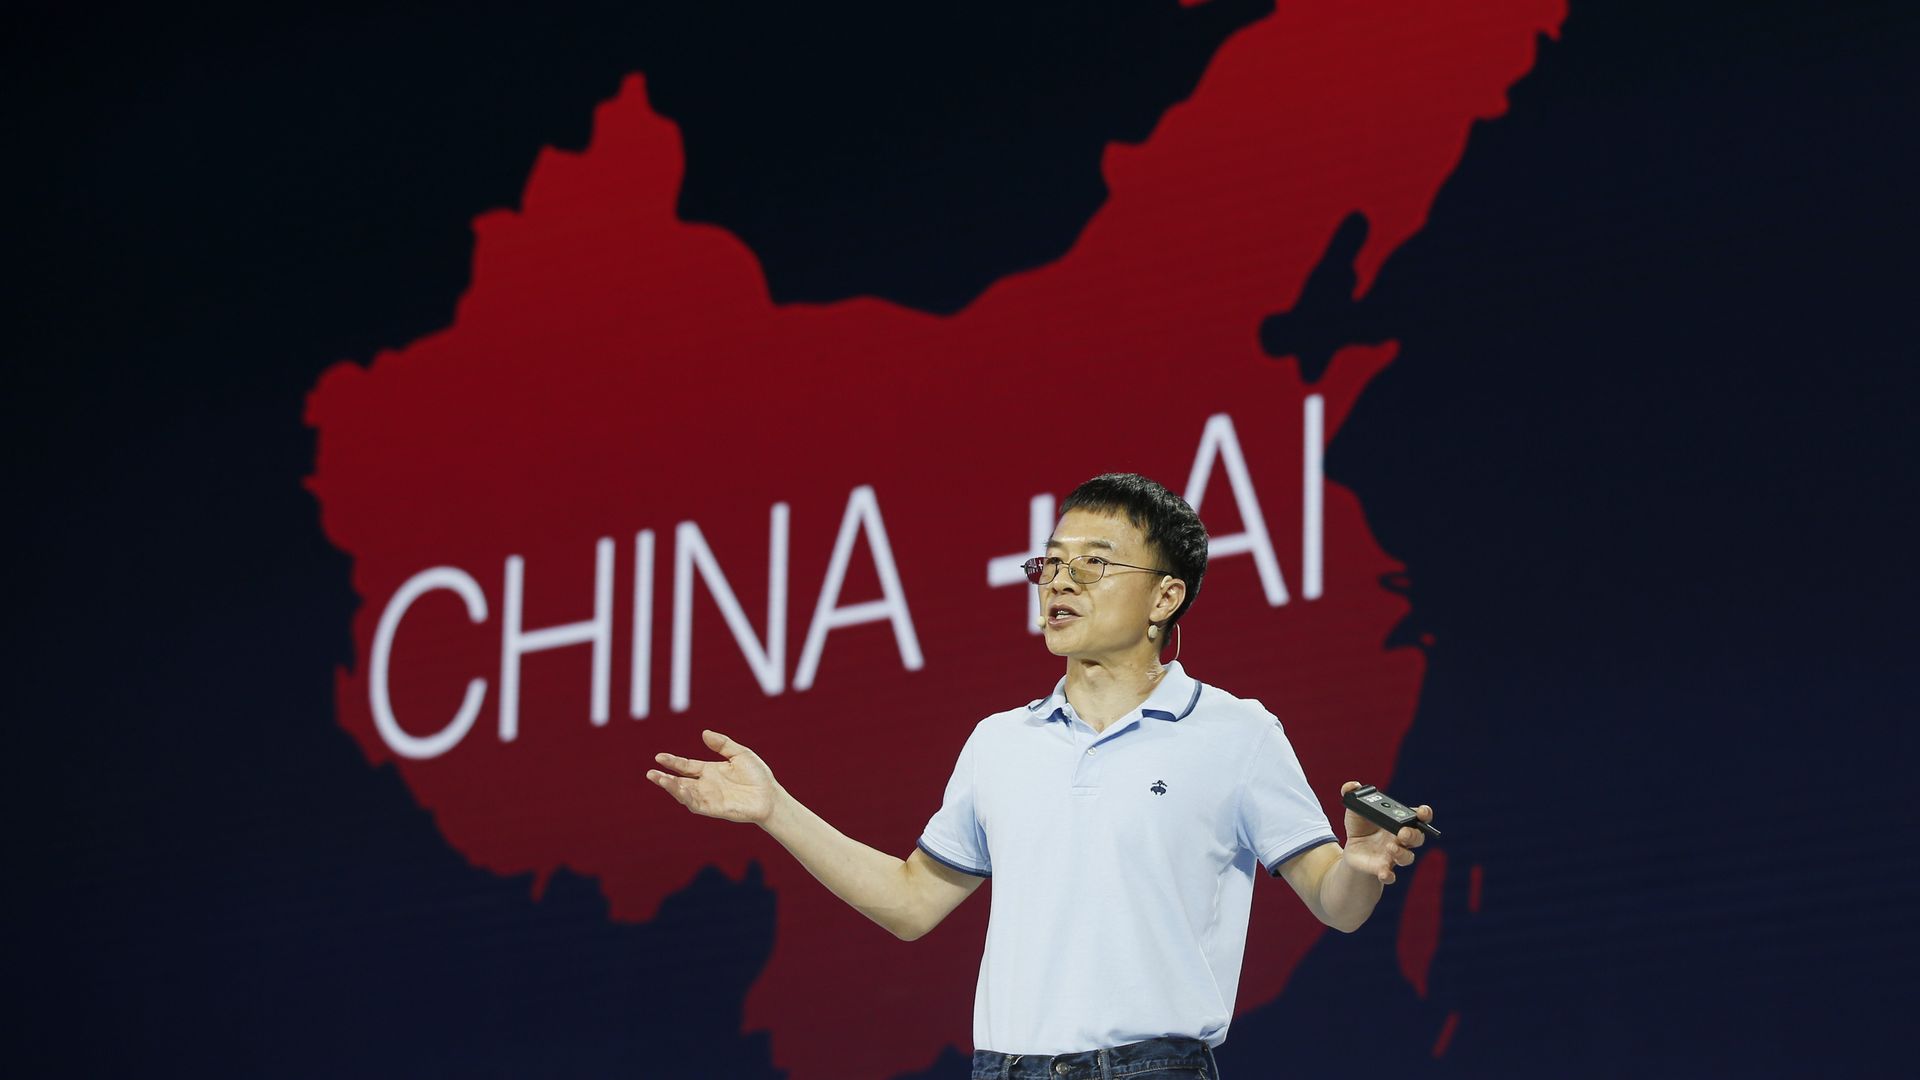 Baidu shares fall after an AI executive steps down.